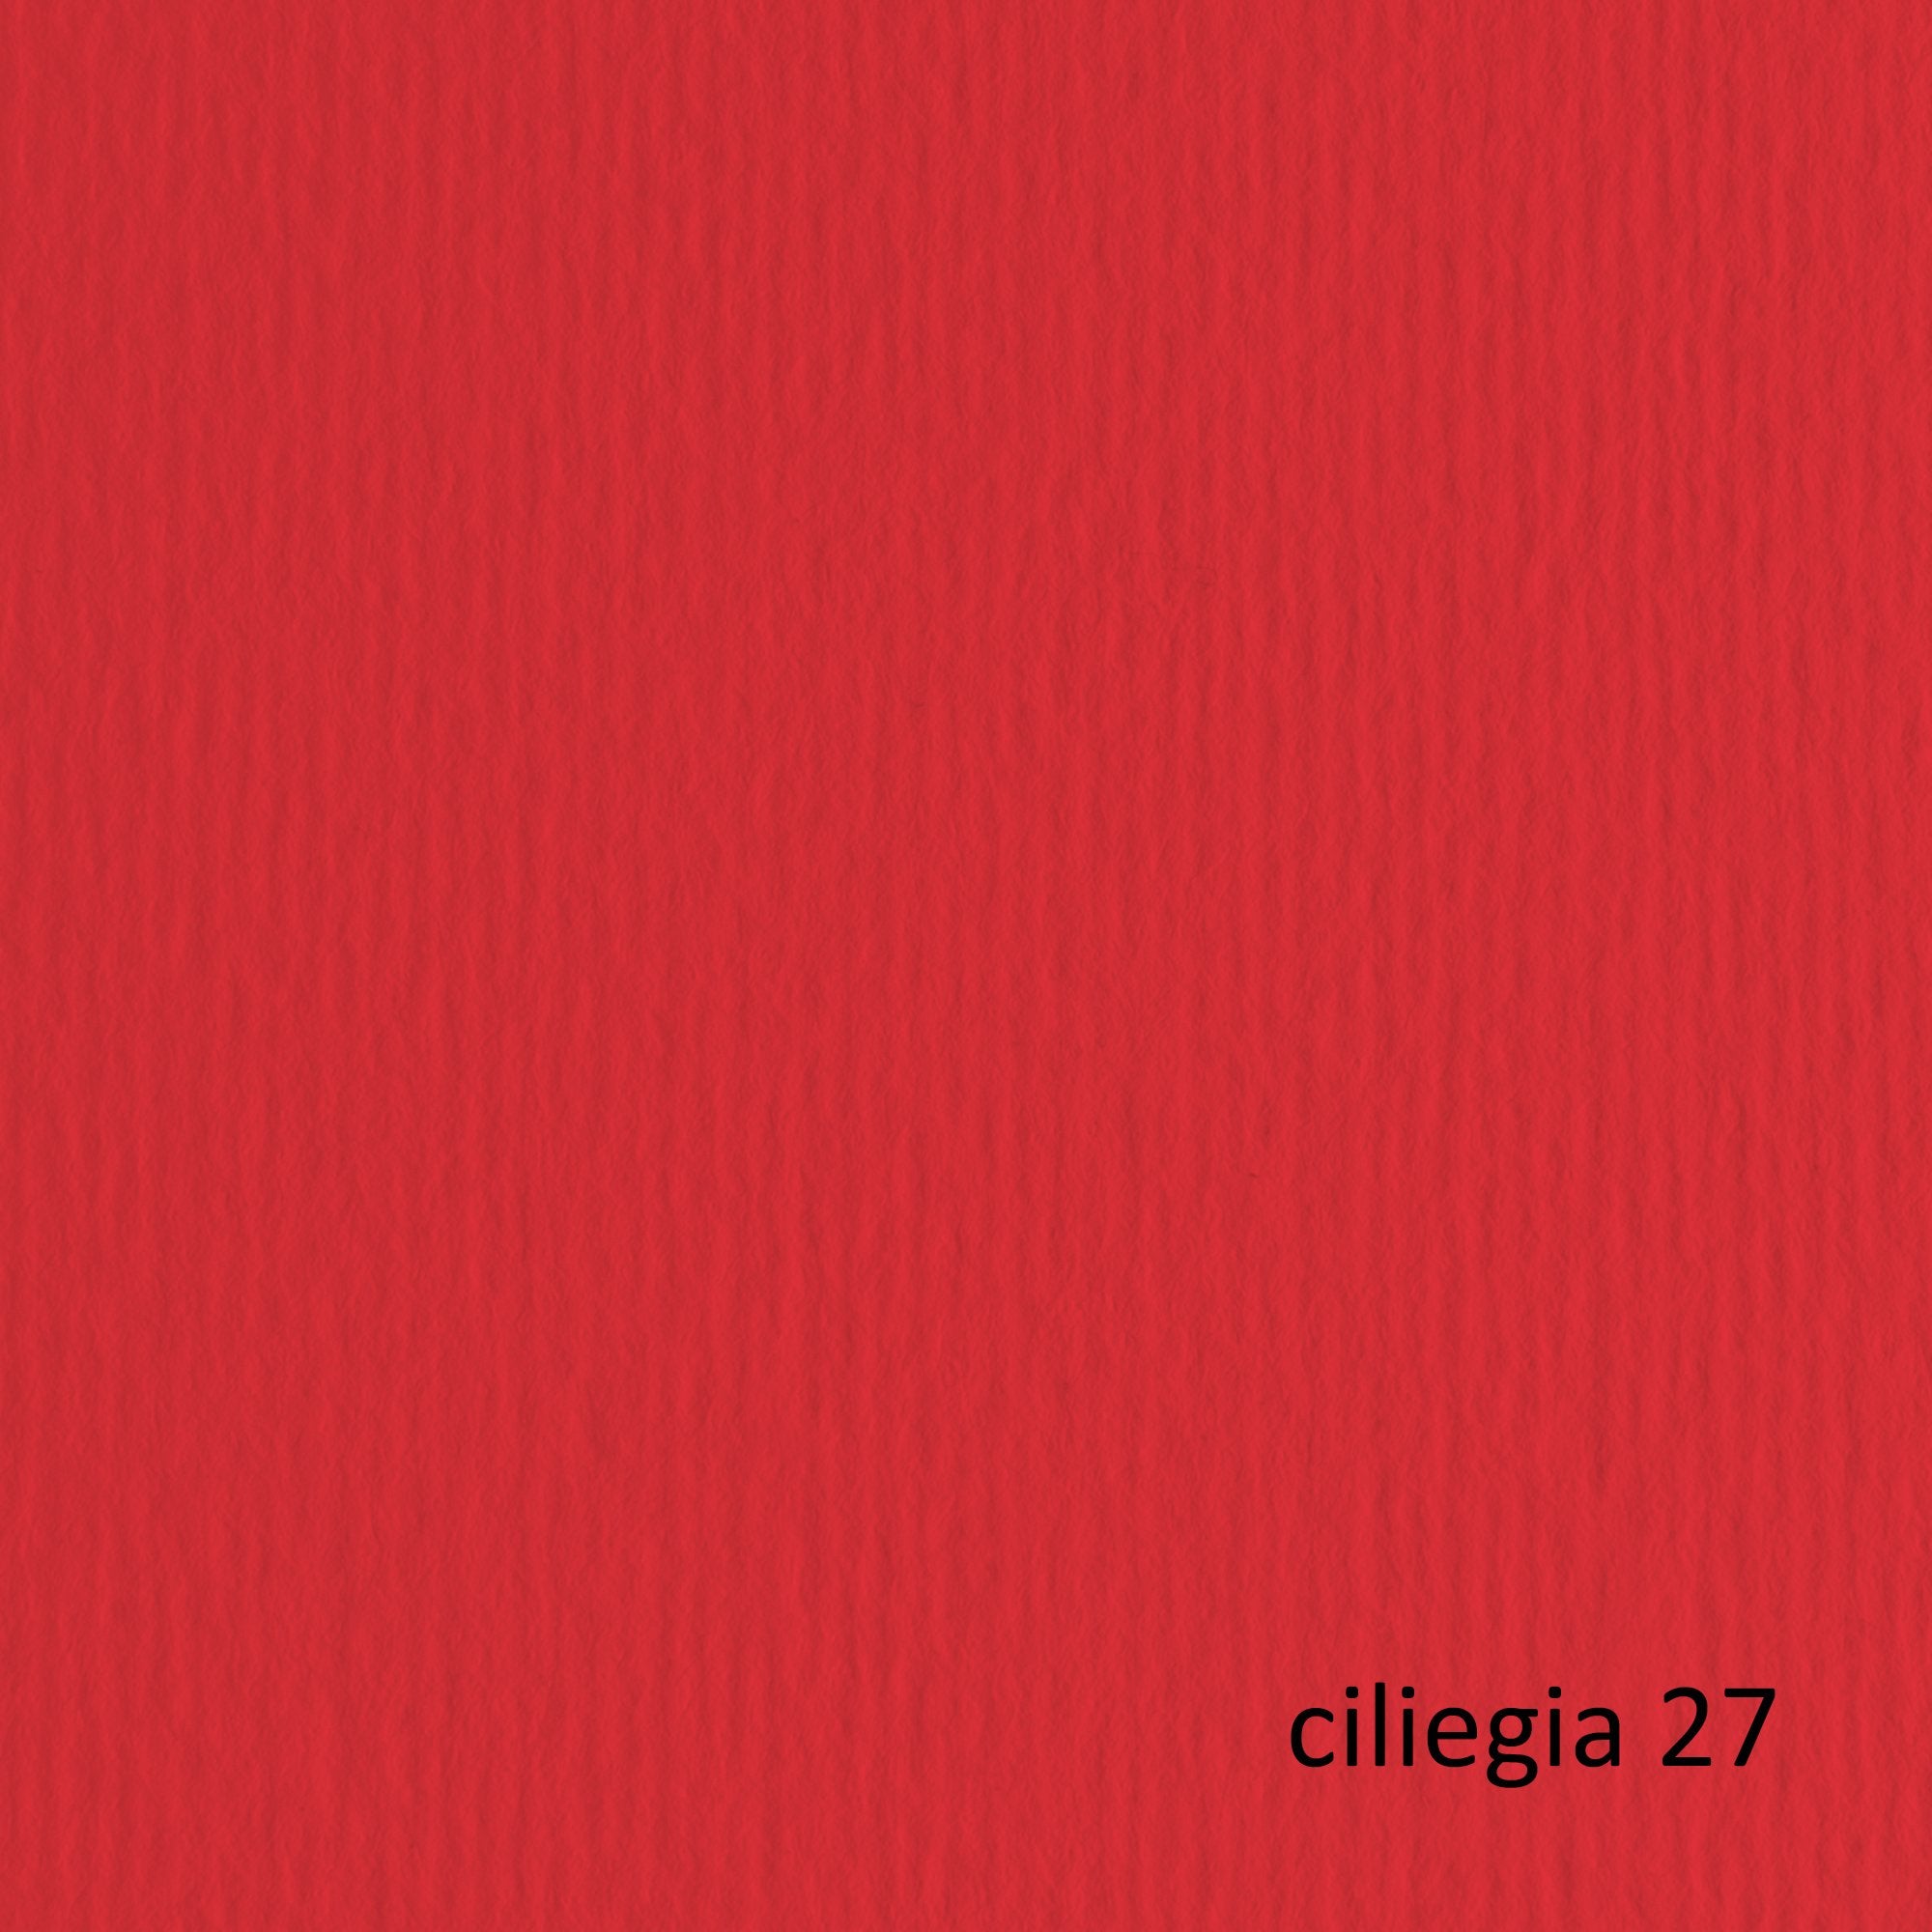 fabriano-blister-10fg-cartoncino-70x100-220gr-ciliegia-127-elle-erre